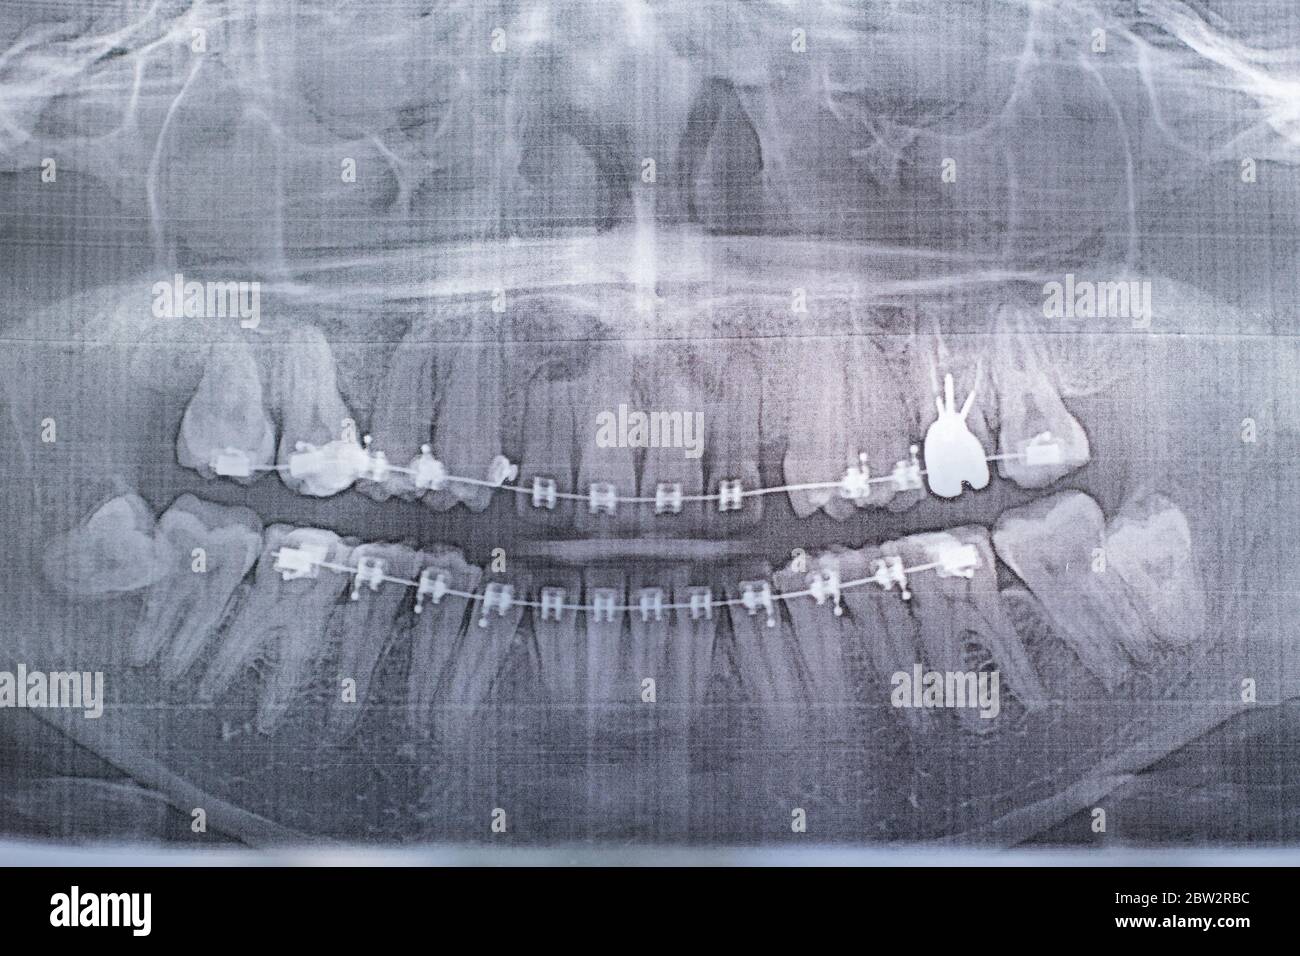 Photographie radiographique des dents humaines avec un système d'accolades. Dent de sagesse retardée Banque D'Images